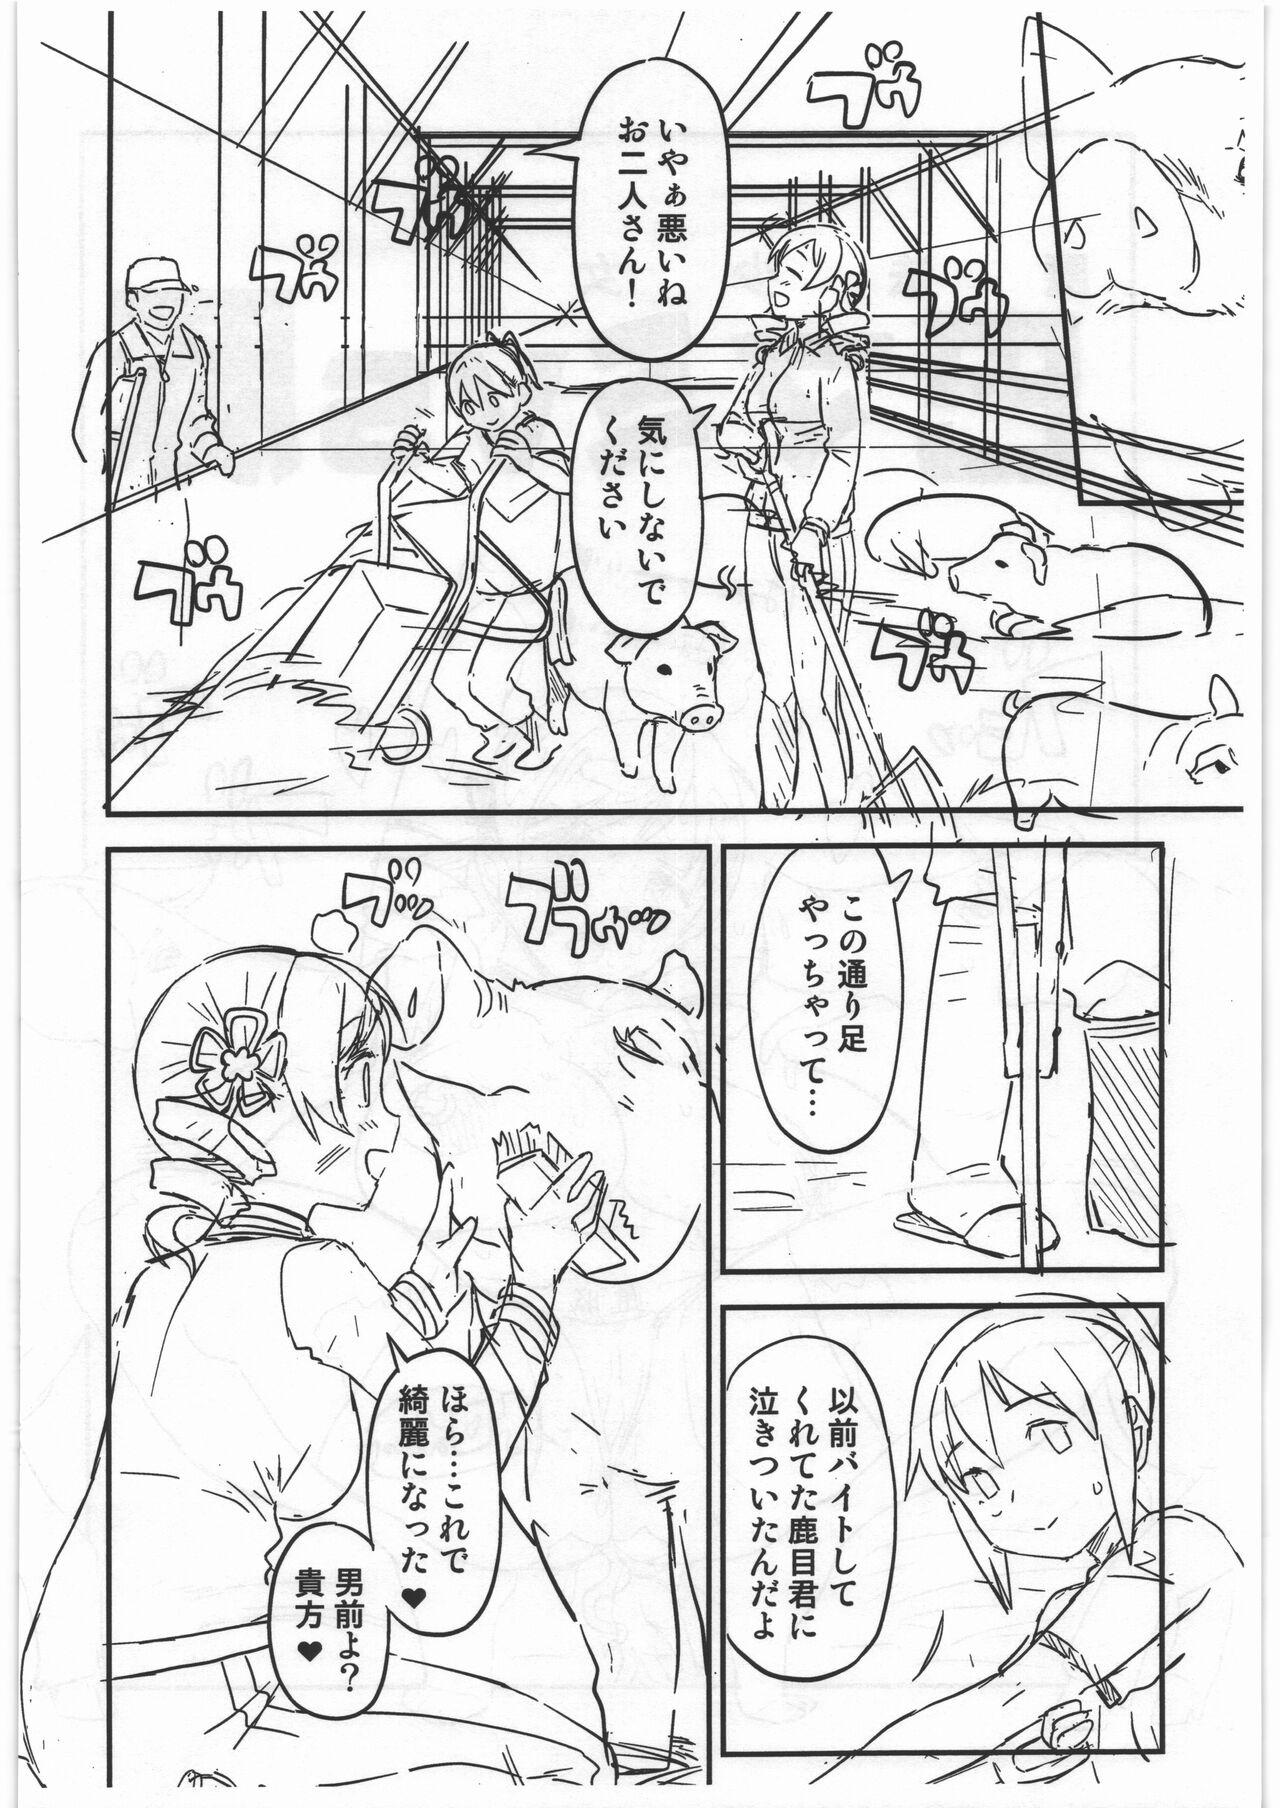 18yearsold CB:NG M★M - Puella magi madoka magica Monster hunter Hardfuck - Page 10